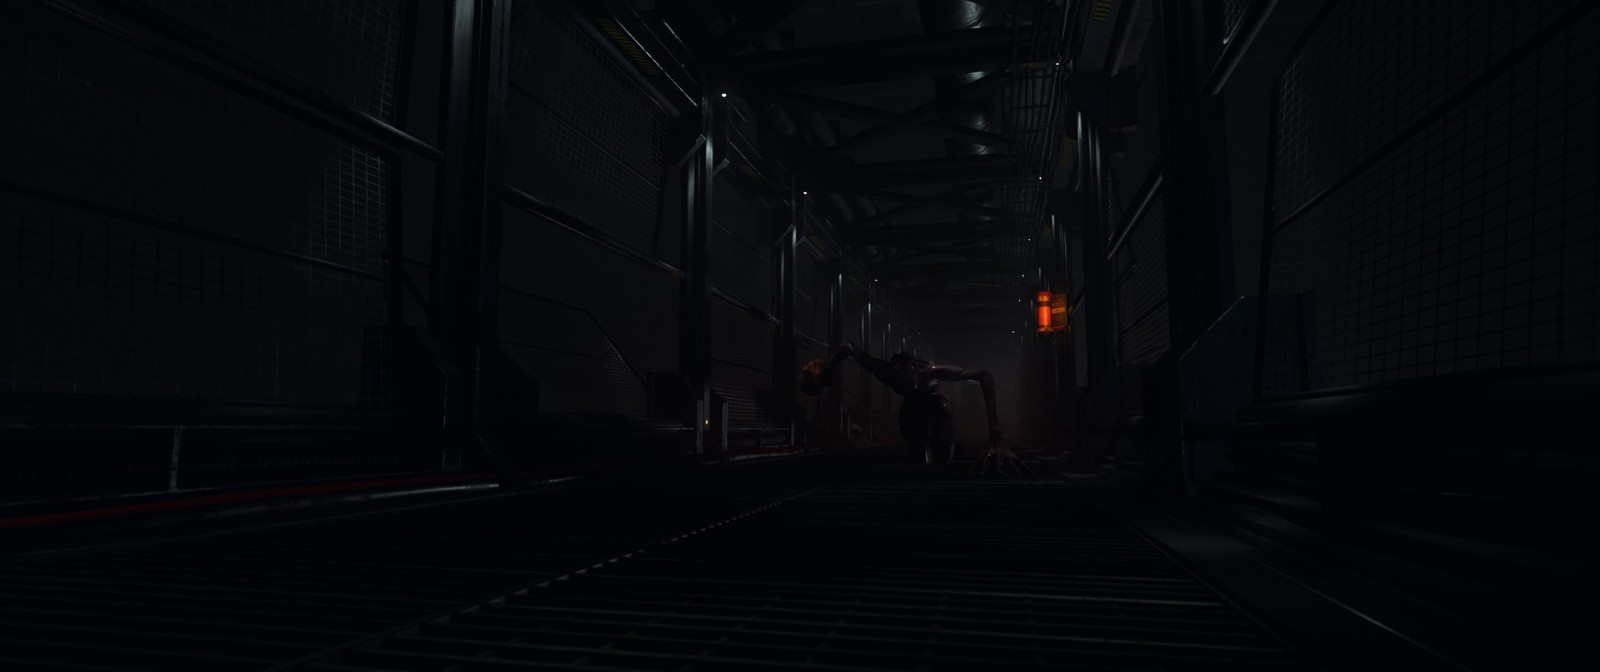 恐怖游戏《消极氛围》预告 灵感源于《死亡空间》